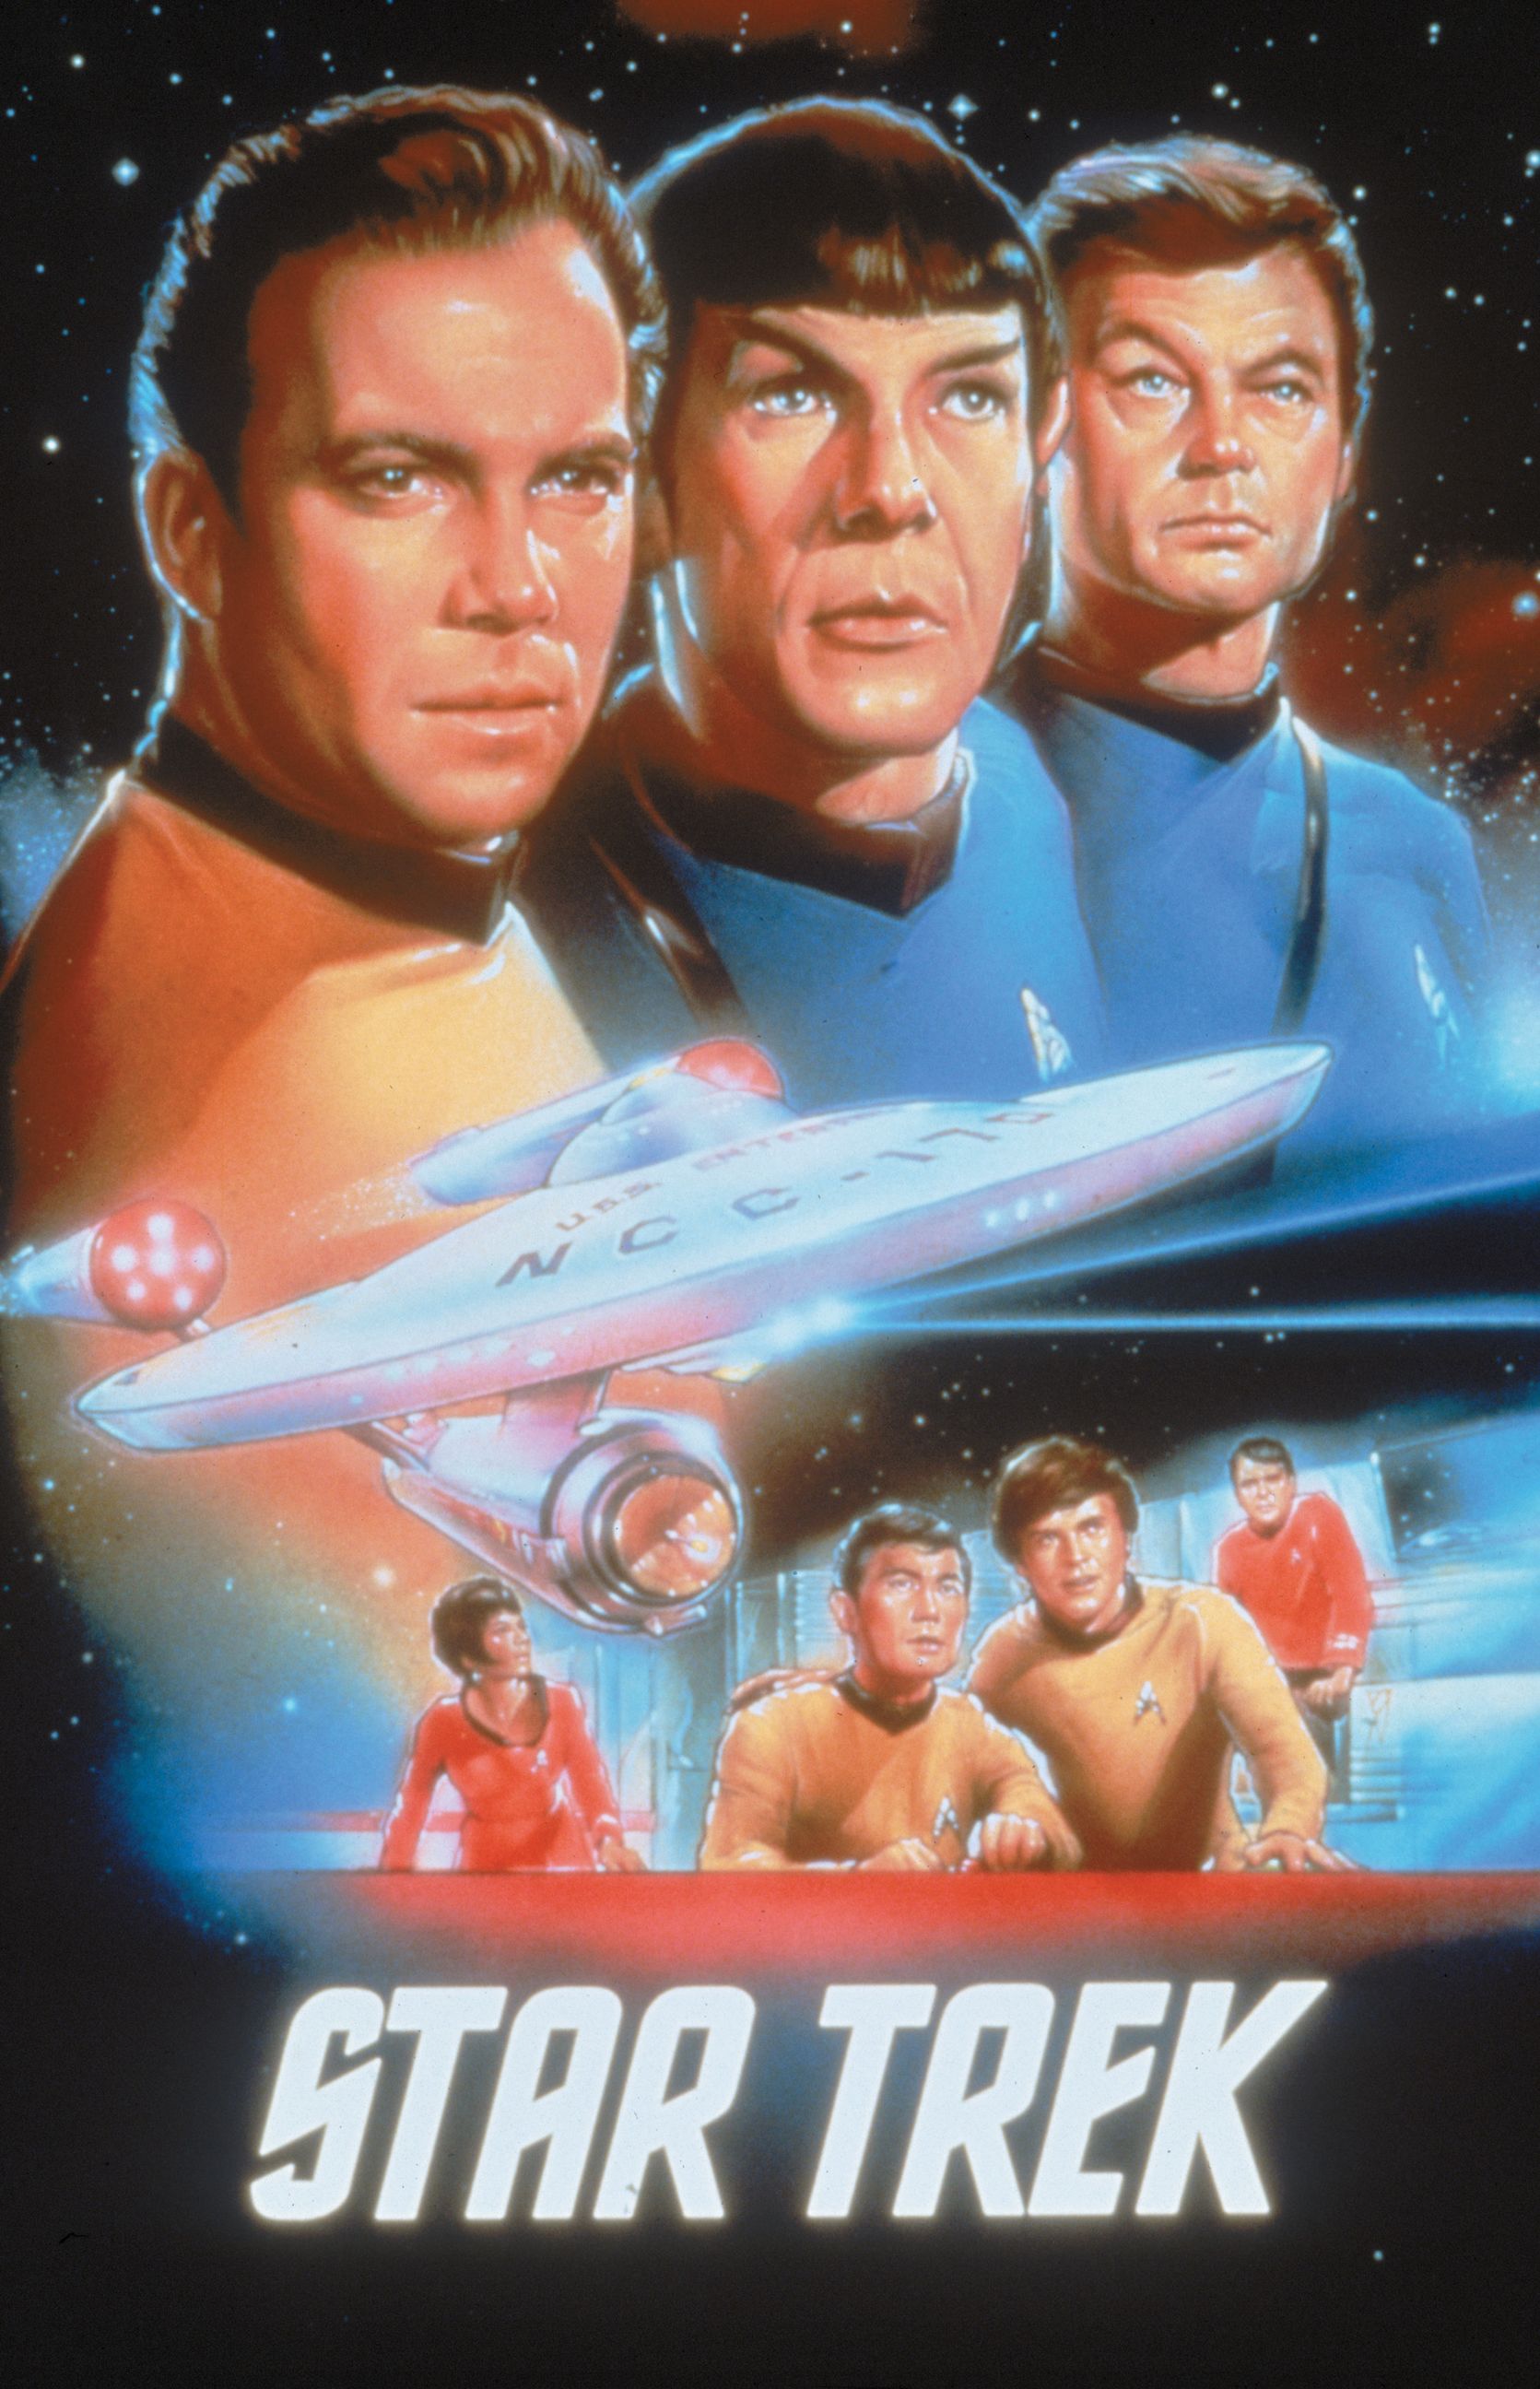 HQ Star Trek: The Original Series Wallpapers | File 469.35Kb